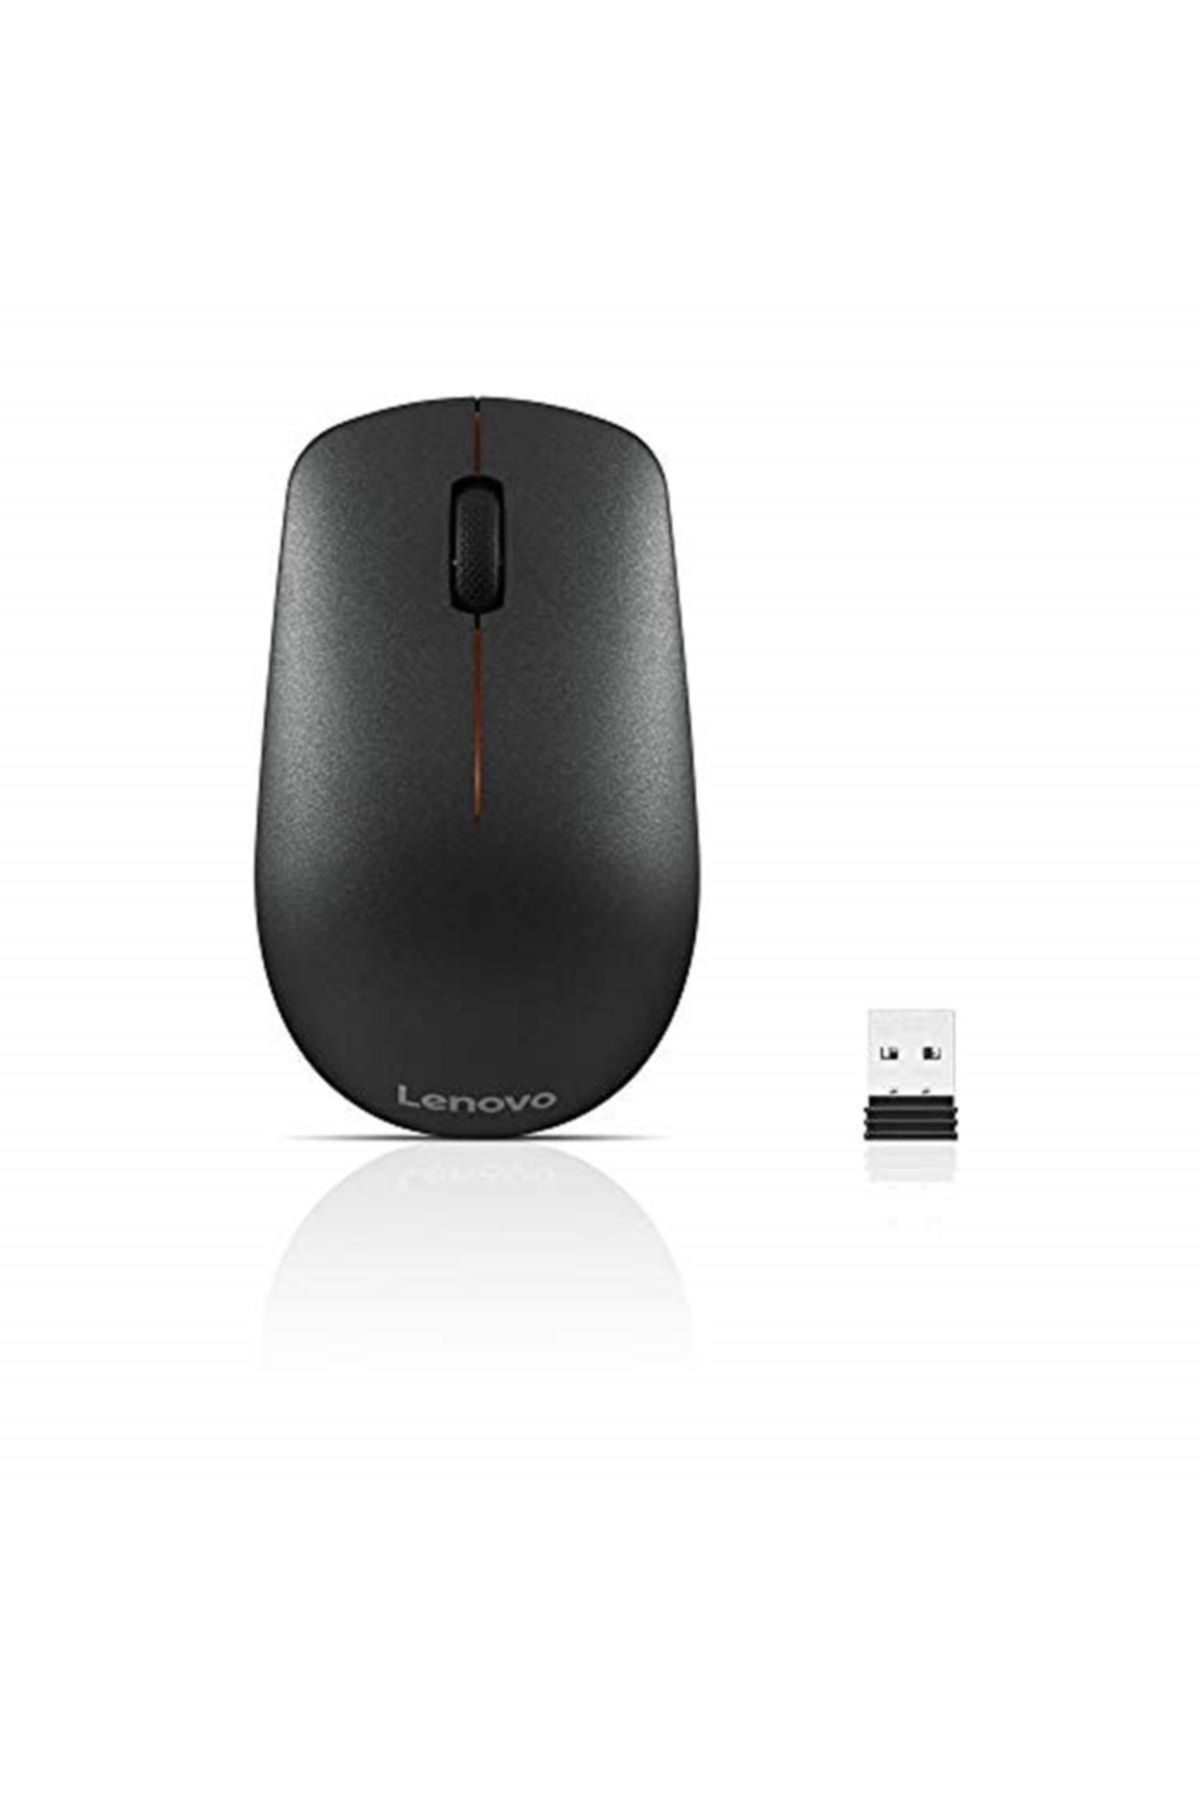 LENOVO Marka: 400 Kablosuz 1200 Dpi Mouse Kategori: Mouse